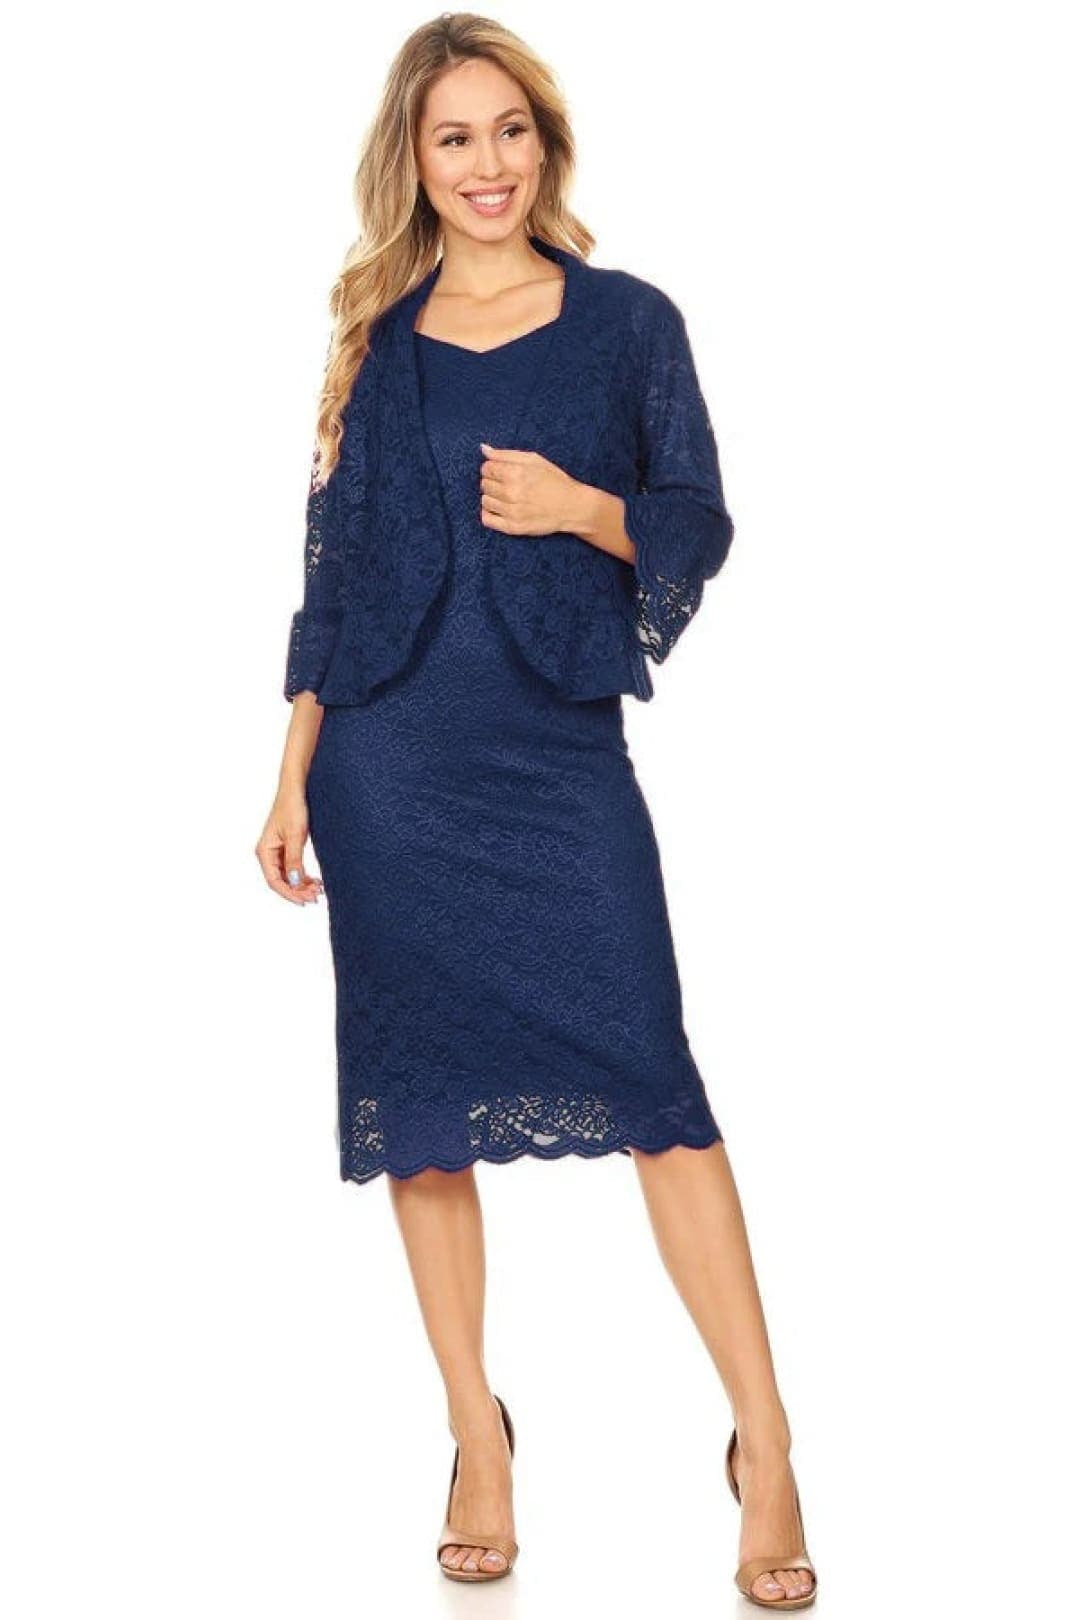 J & J 8873 Plus Size Lace Dresses - NAVY BLUE / M